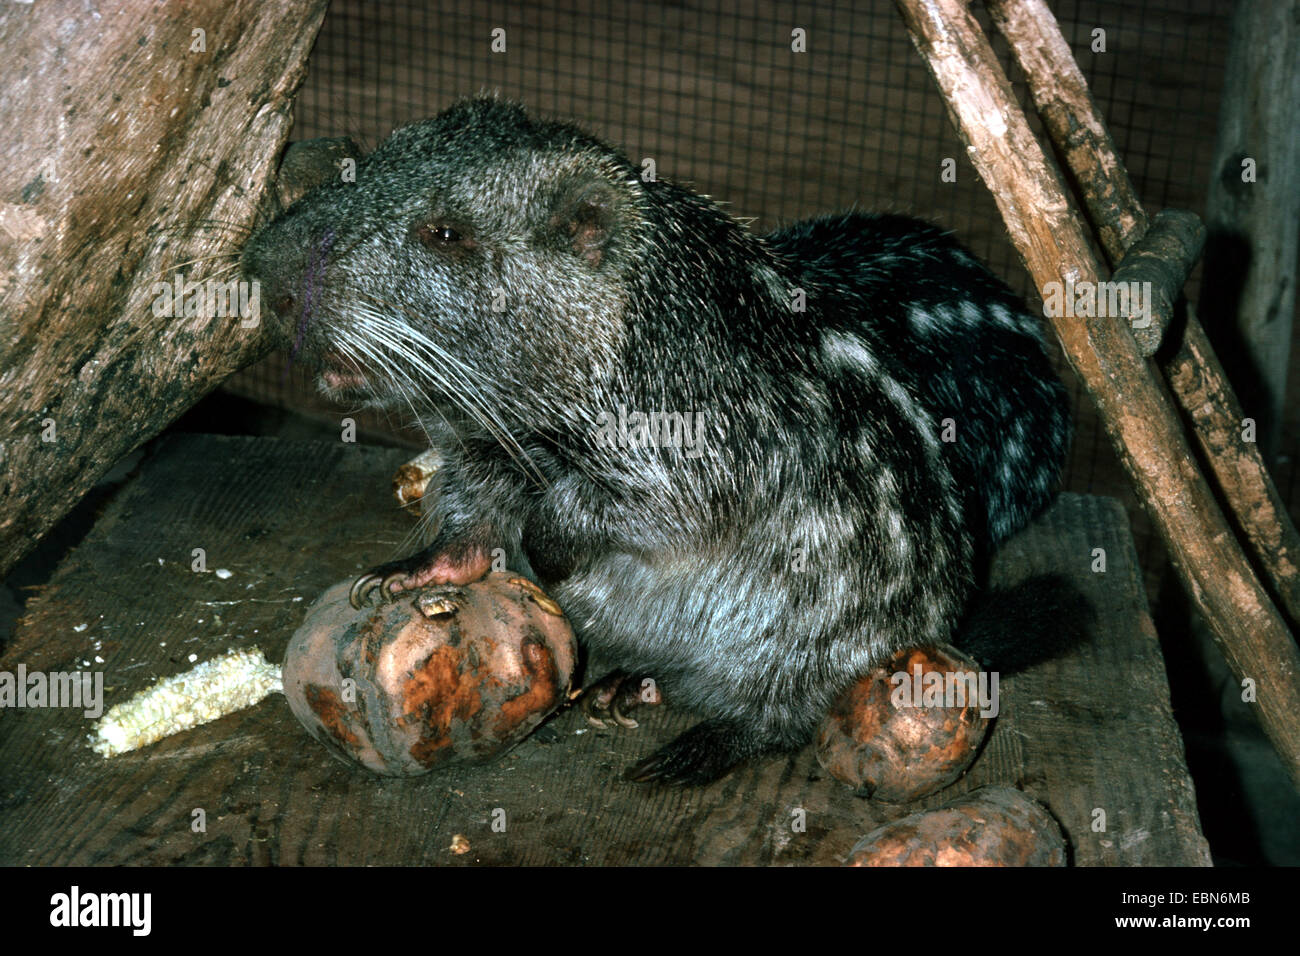 Branick pacarana, la rata gigante (Dinomys branickii), en el gabinete. Foto de stock